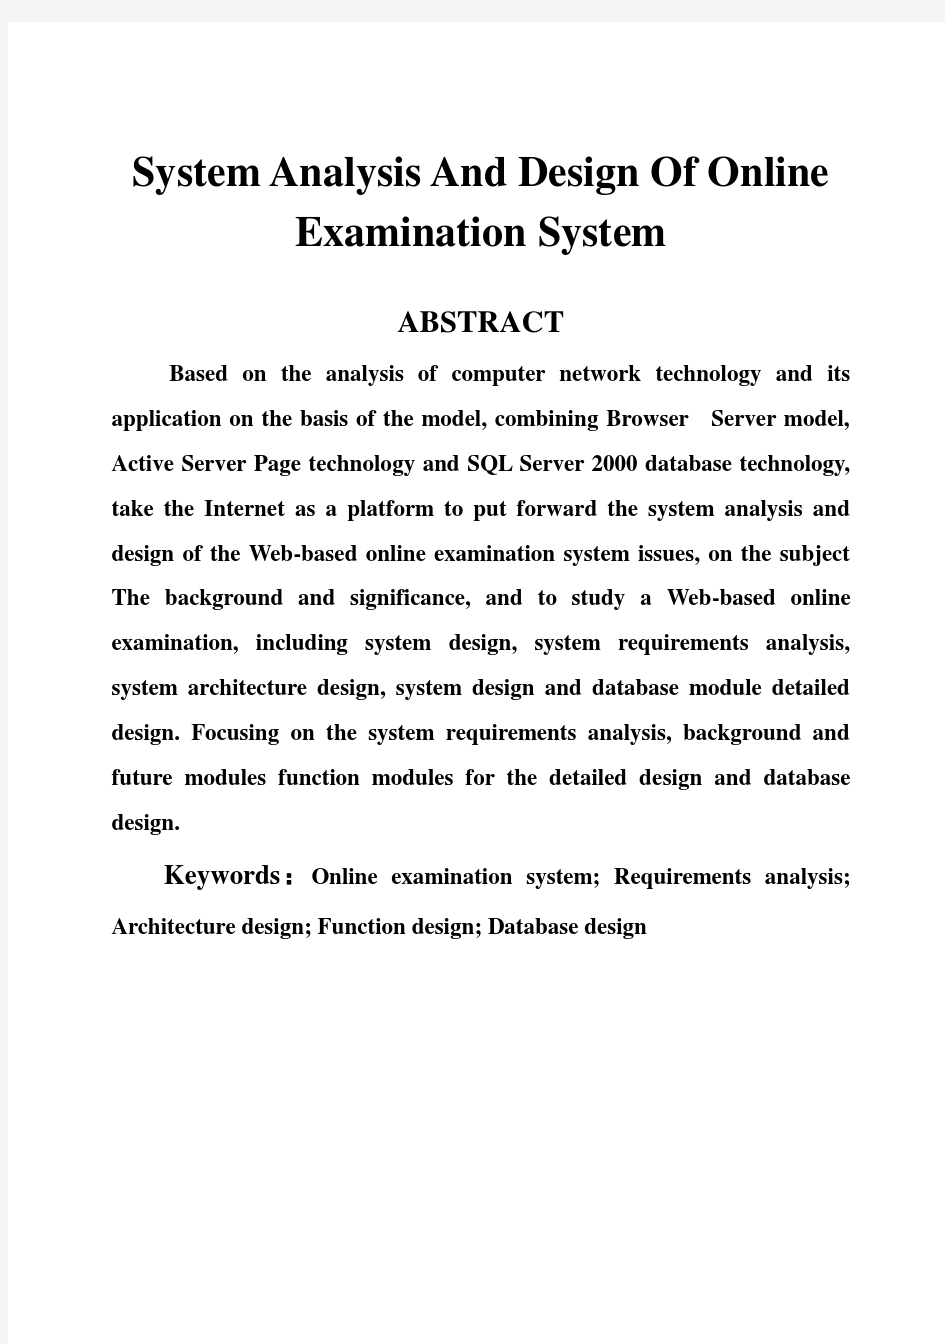 (完整版)在线考试系统的系统分析与设计毕业设计